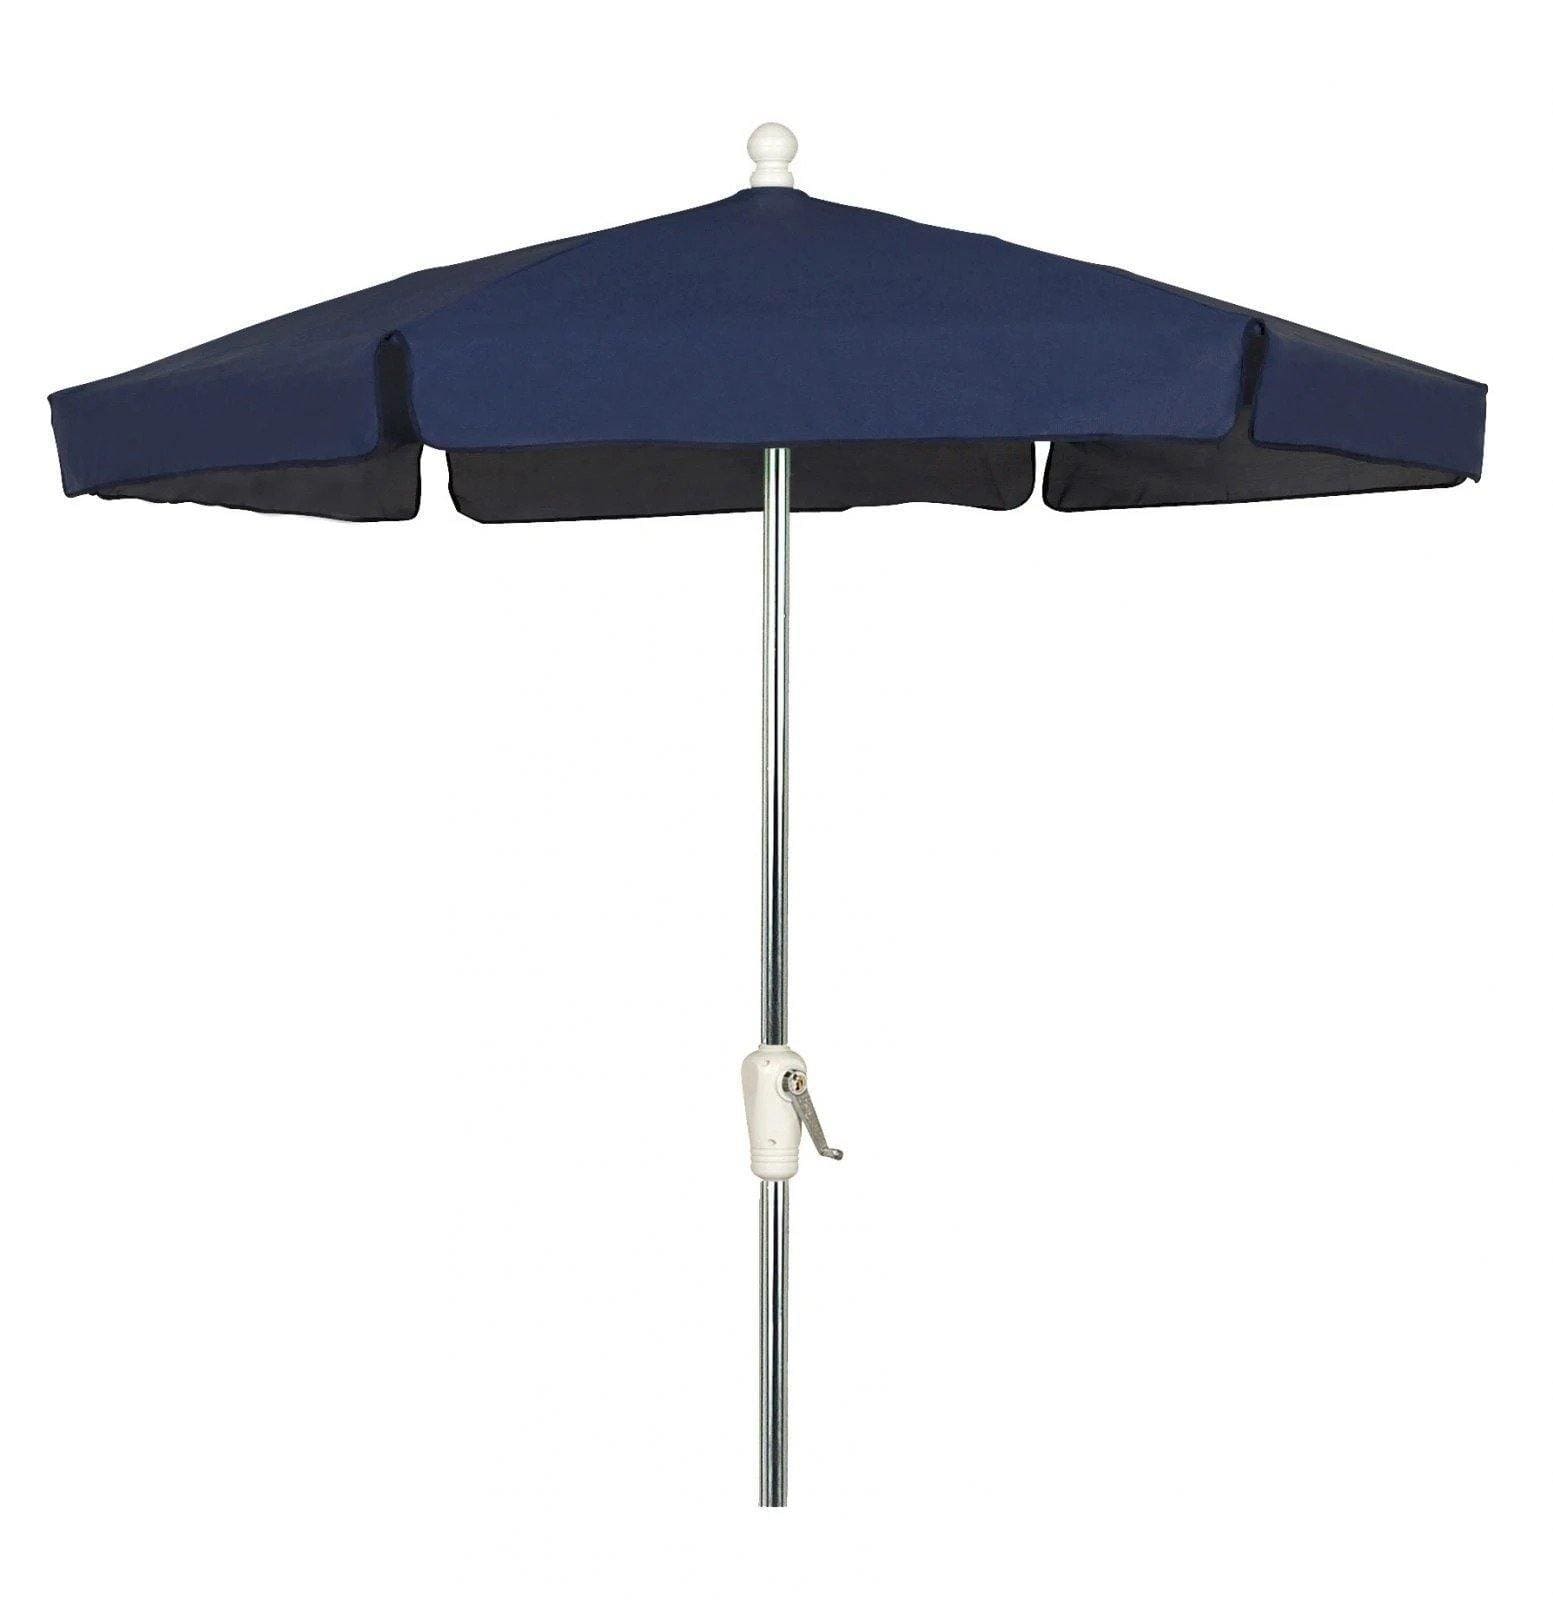 Fiberbuilt Table Umbrellas Navy Blue Fiberbuilt 7.5' Garden Umbrella w/ Push-Up Lift